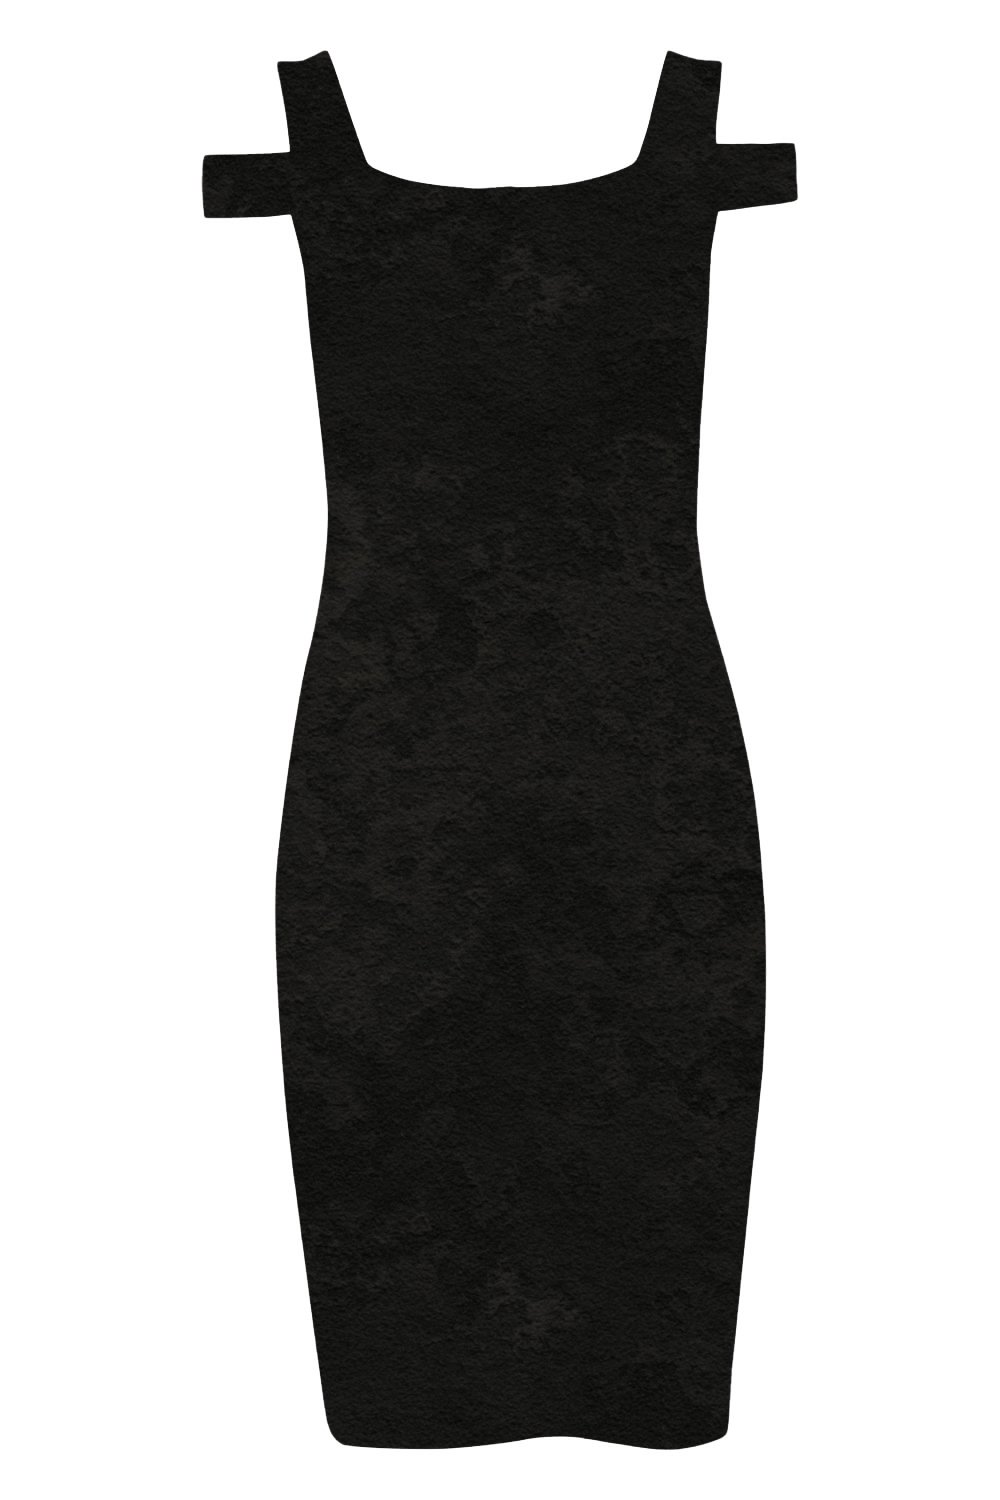 Black Velvet Cold Shoulder Dress, Image 4 of 4